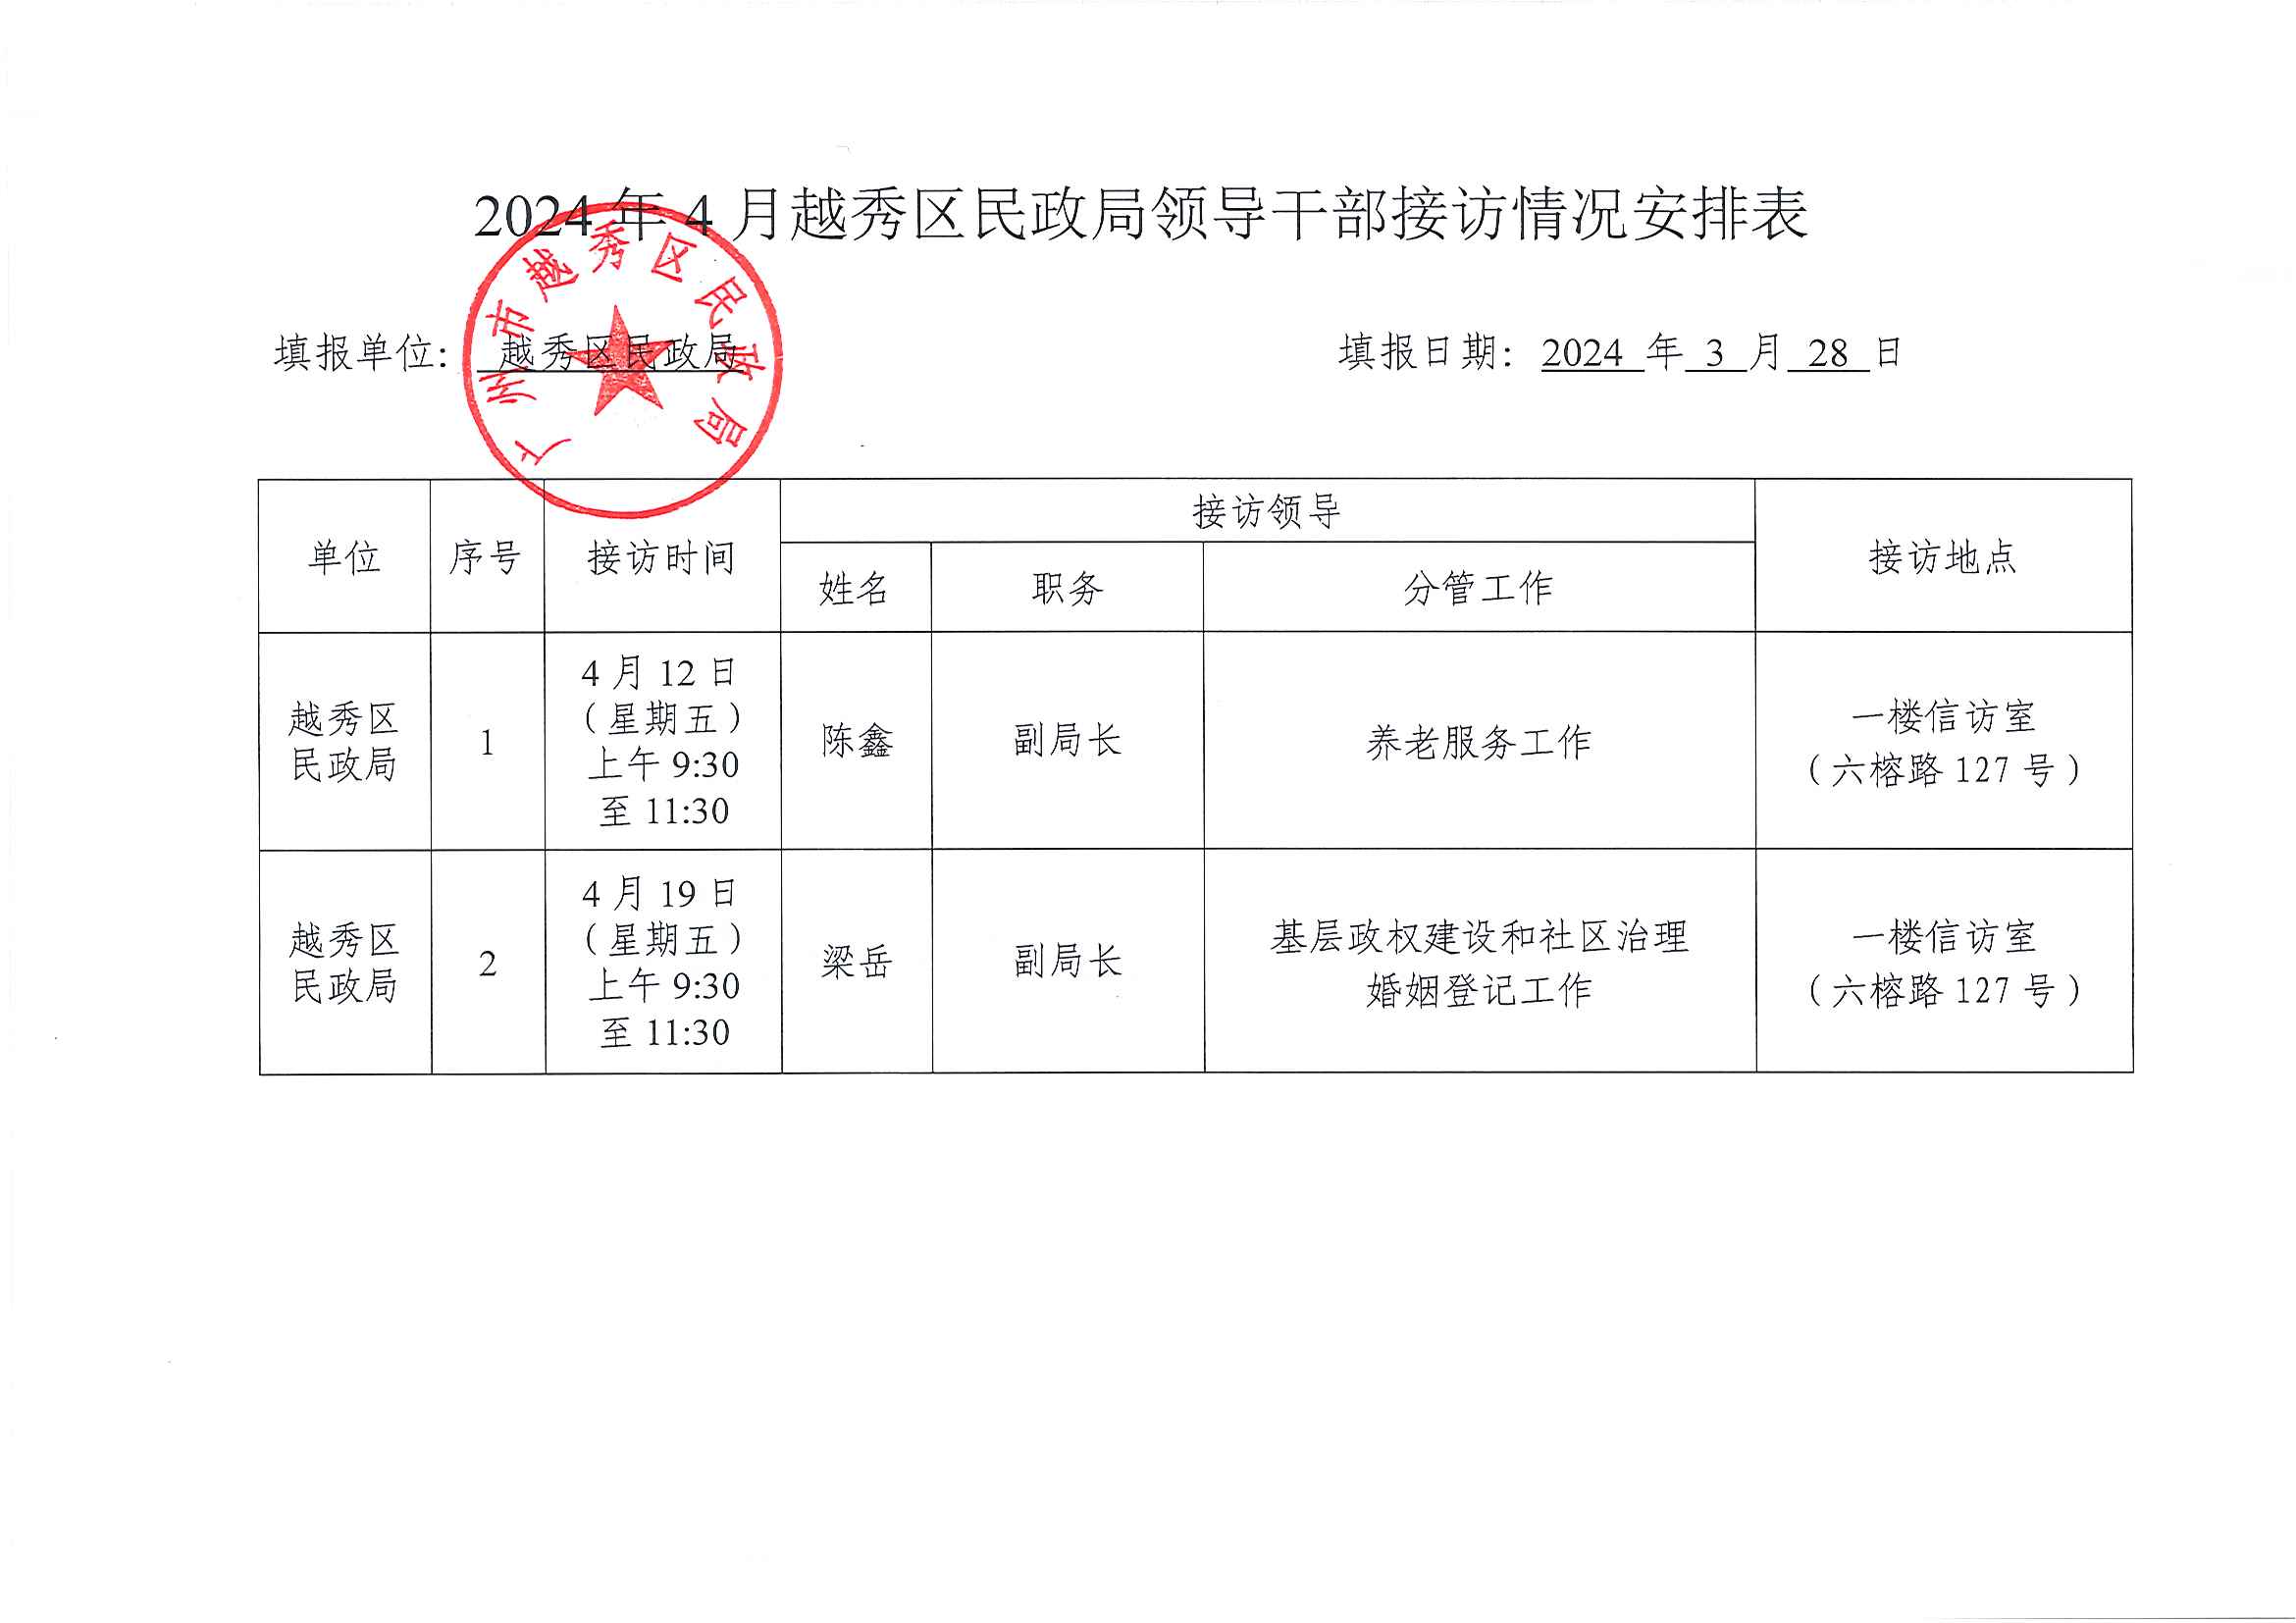 2024年4月越秀区民政局领导干部接访情况安排表.jpg